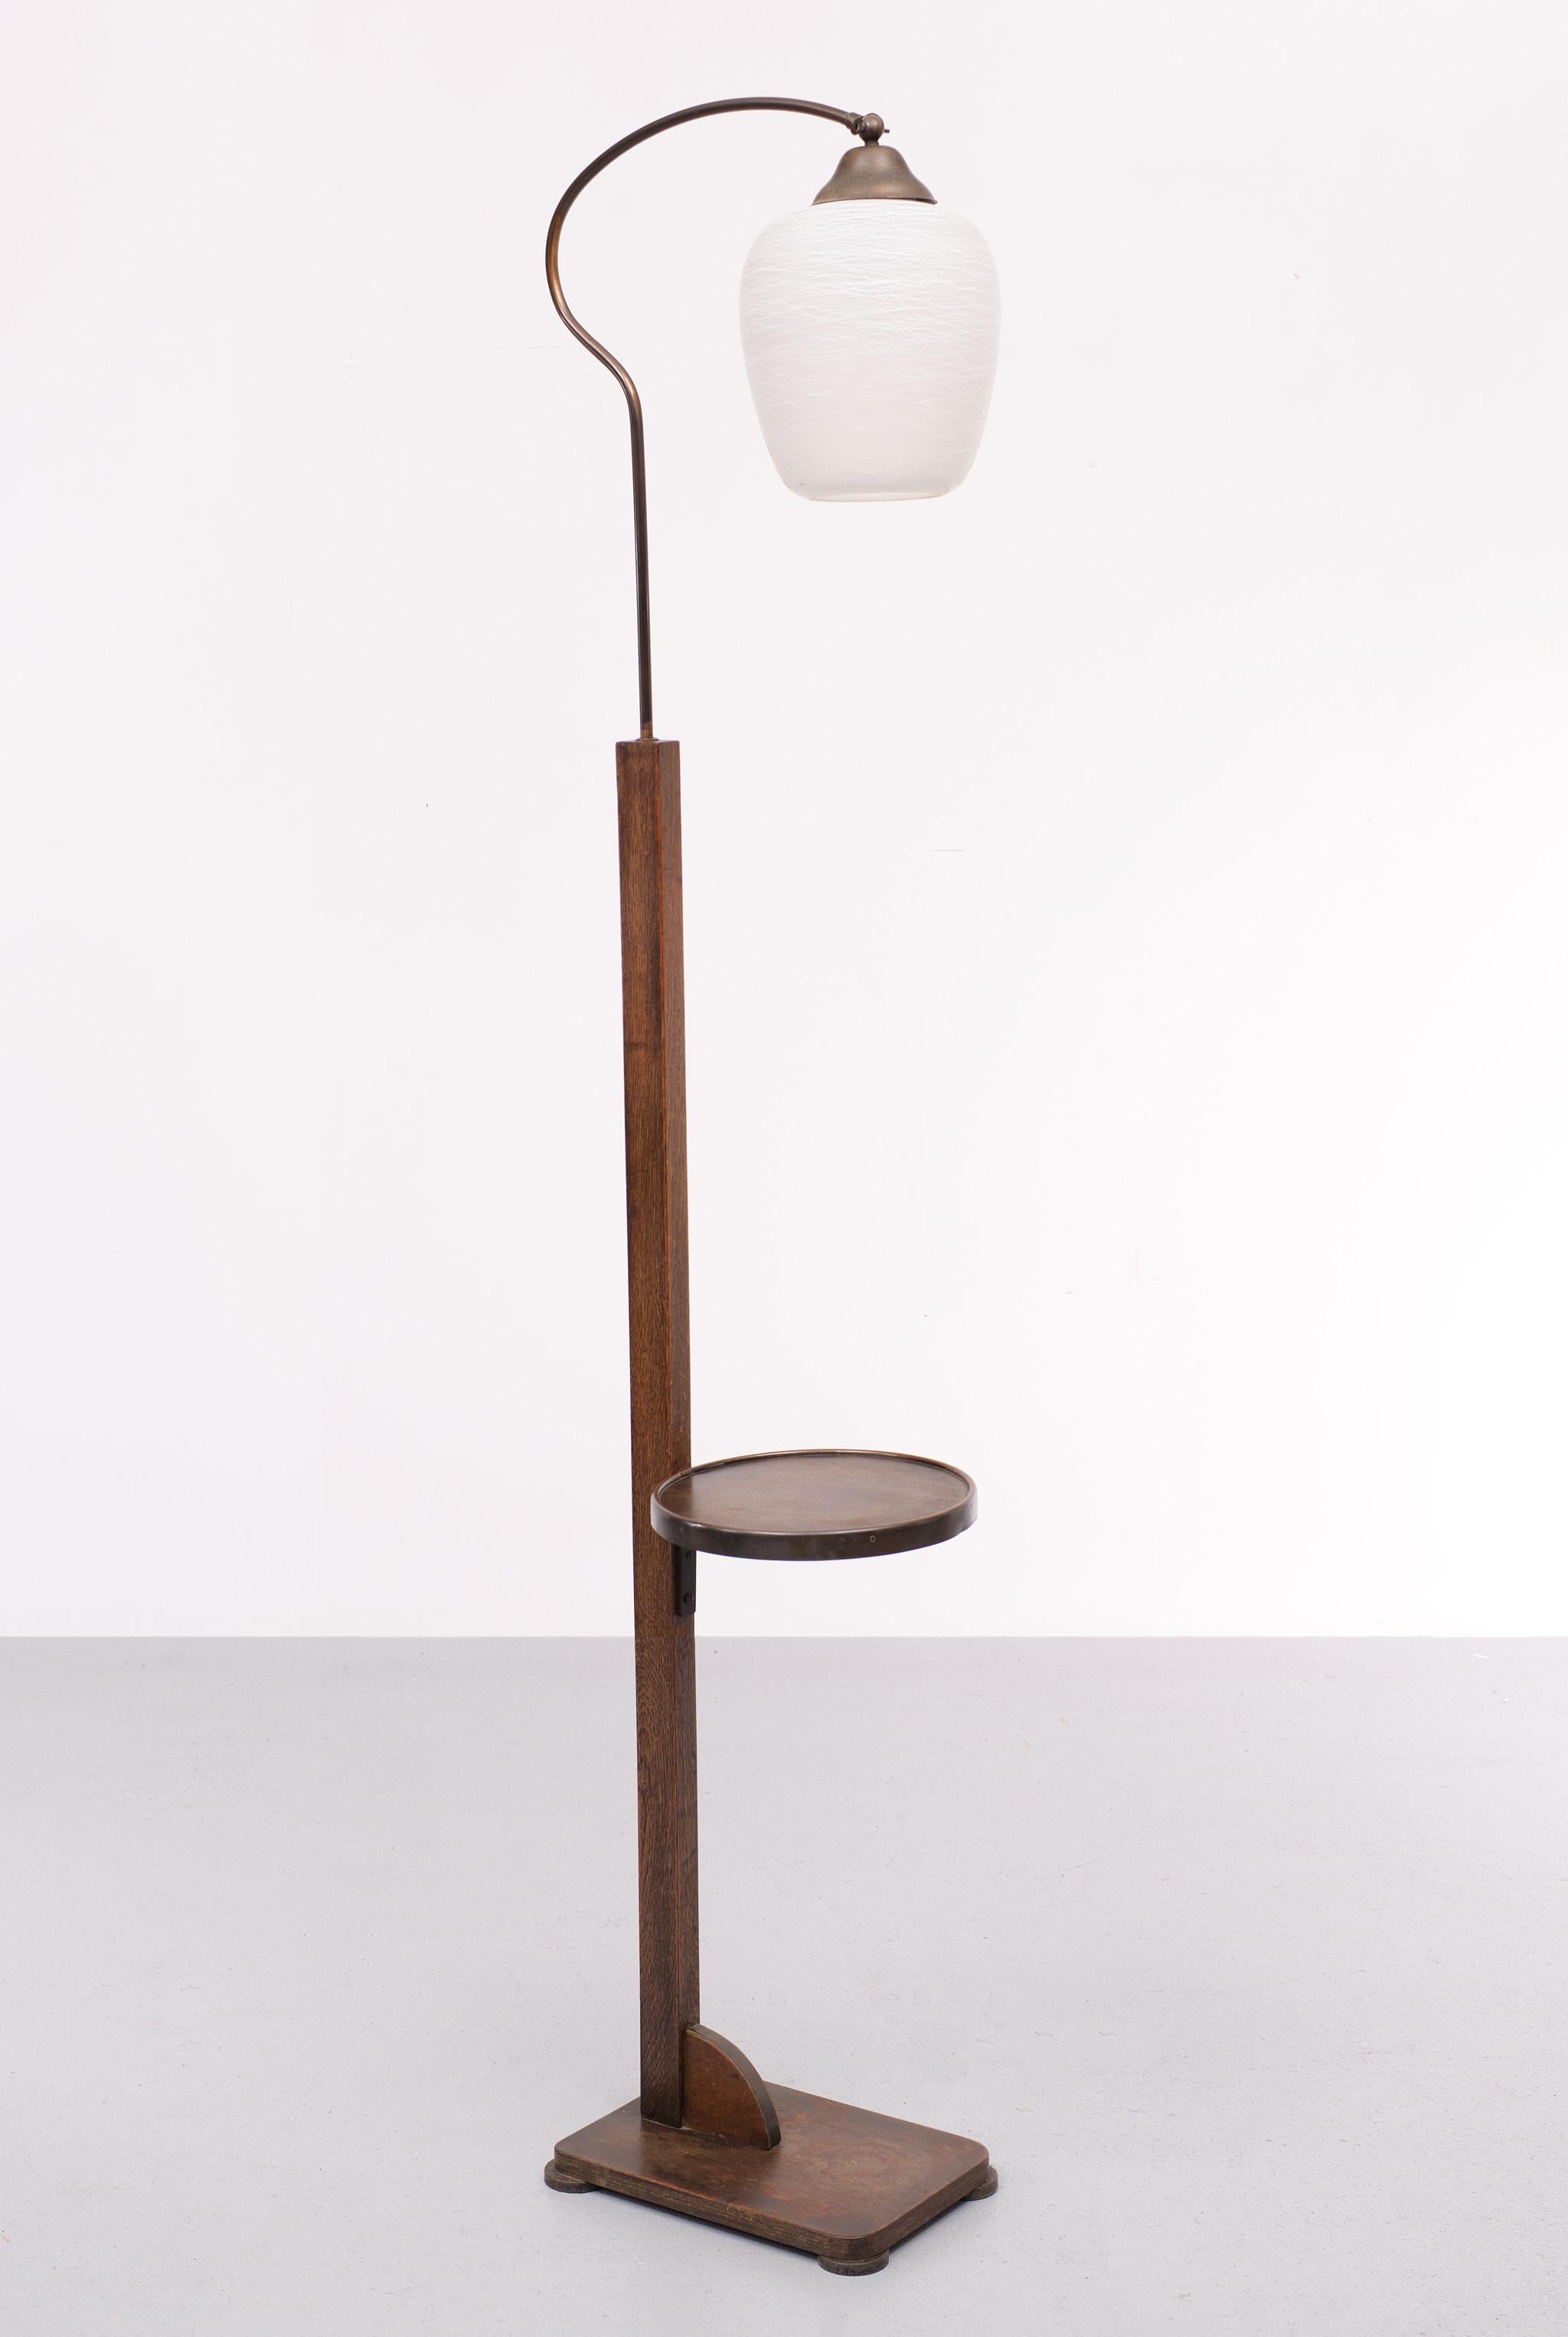 Dutch Art Deco Oak Floor Lamp with Table 1930s Holland